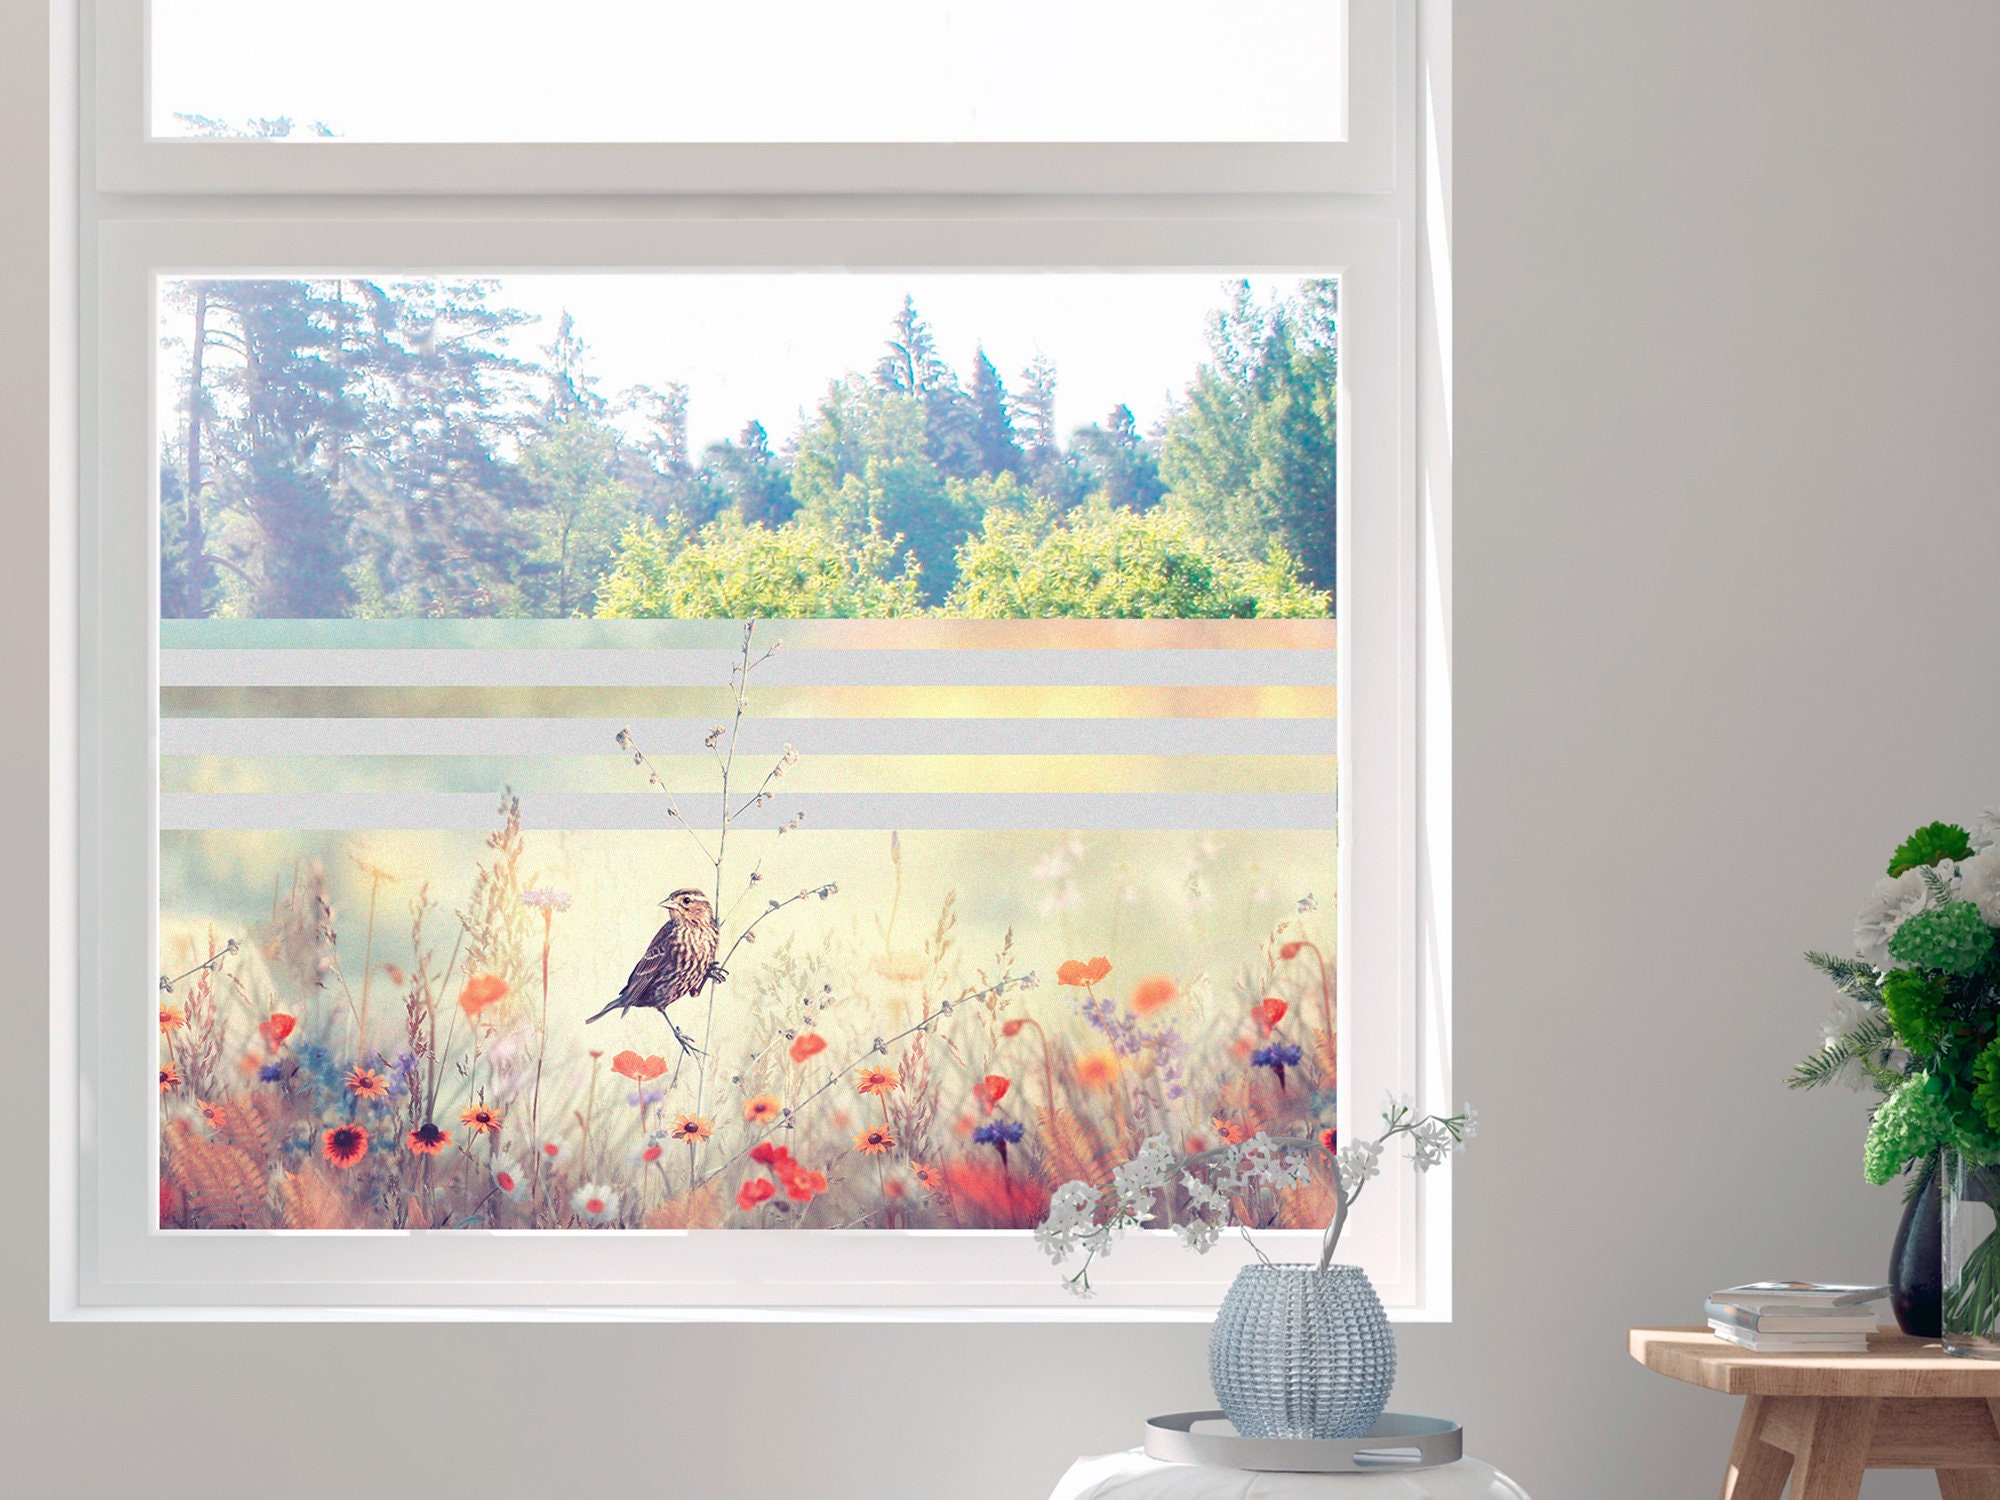 Fensterfolie selbsthaftend Blickdicht,gemalte Blumen und Vögel